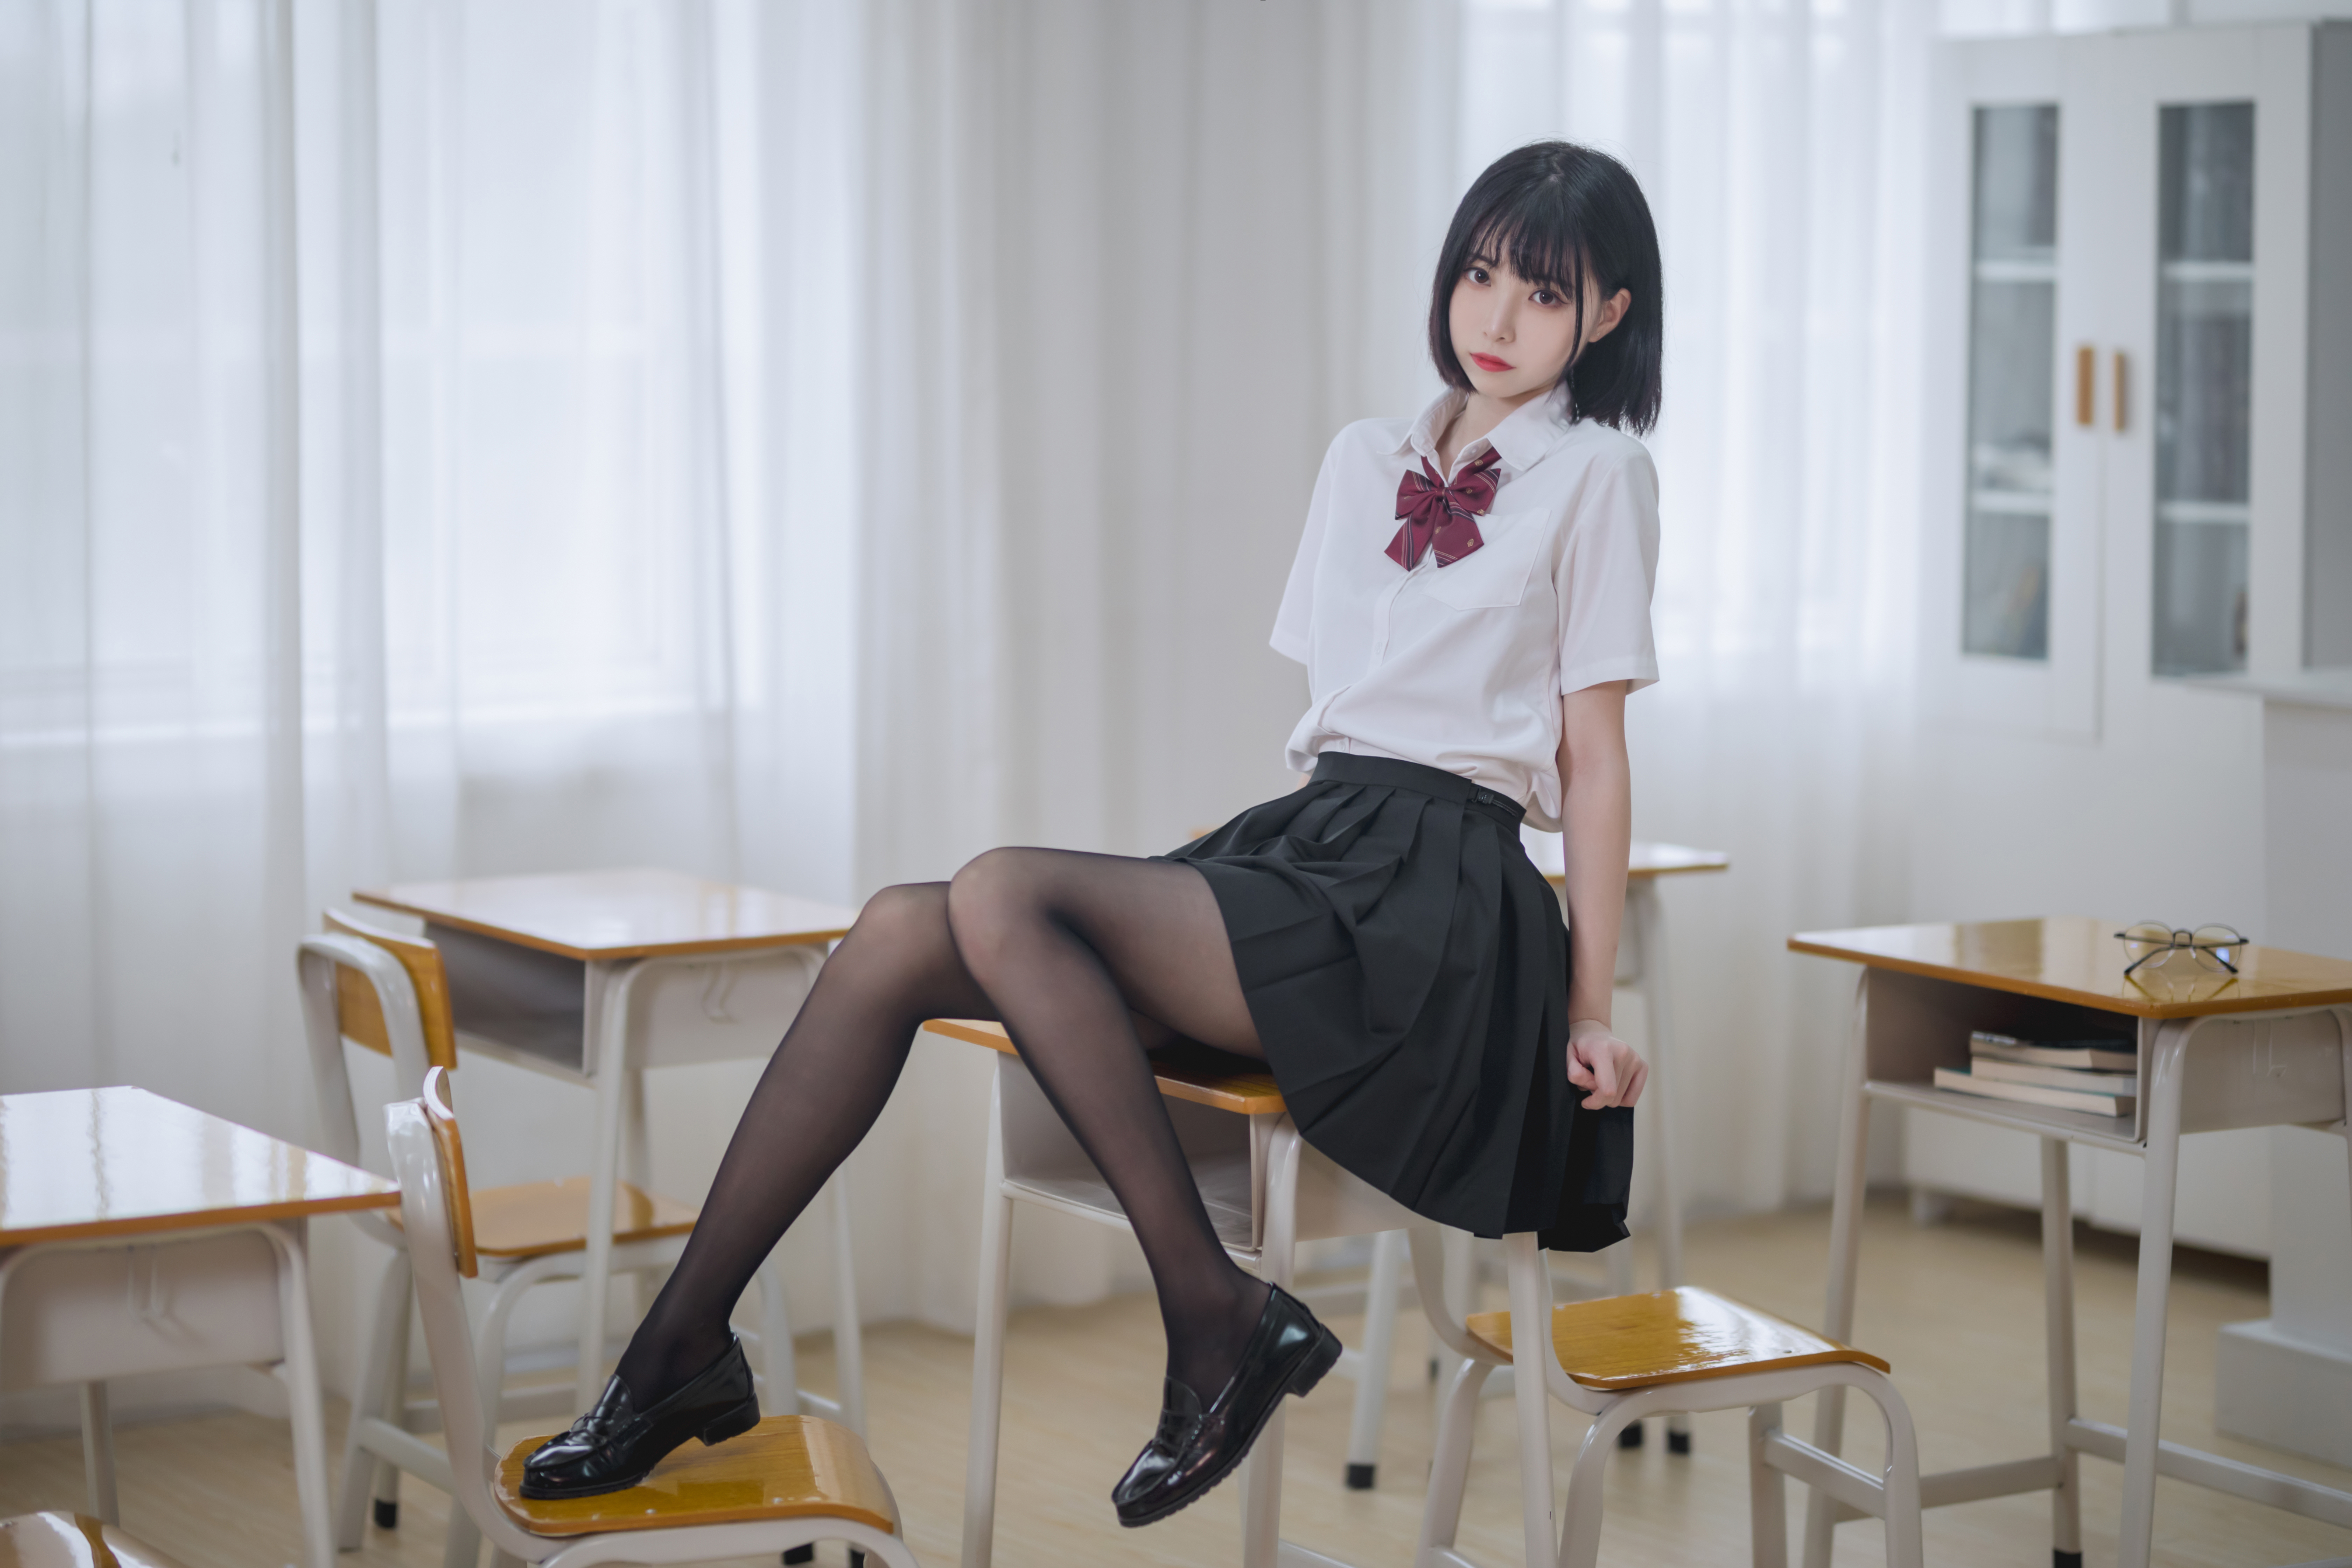 People 4032x2688 women Asian cosplay JK schoolgirl classroom school uniform women indoors pantyhose face Xu Lan